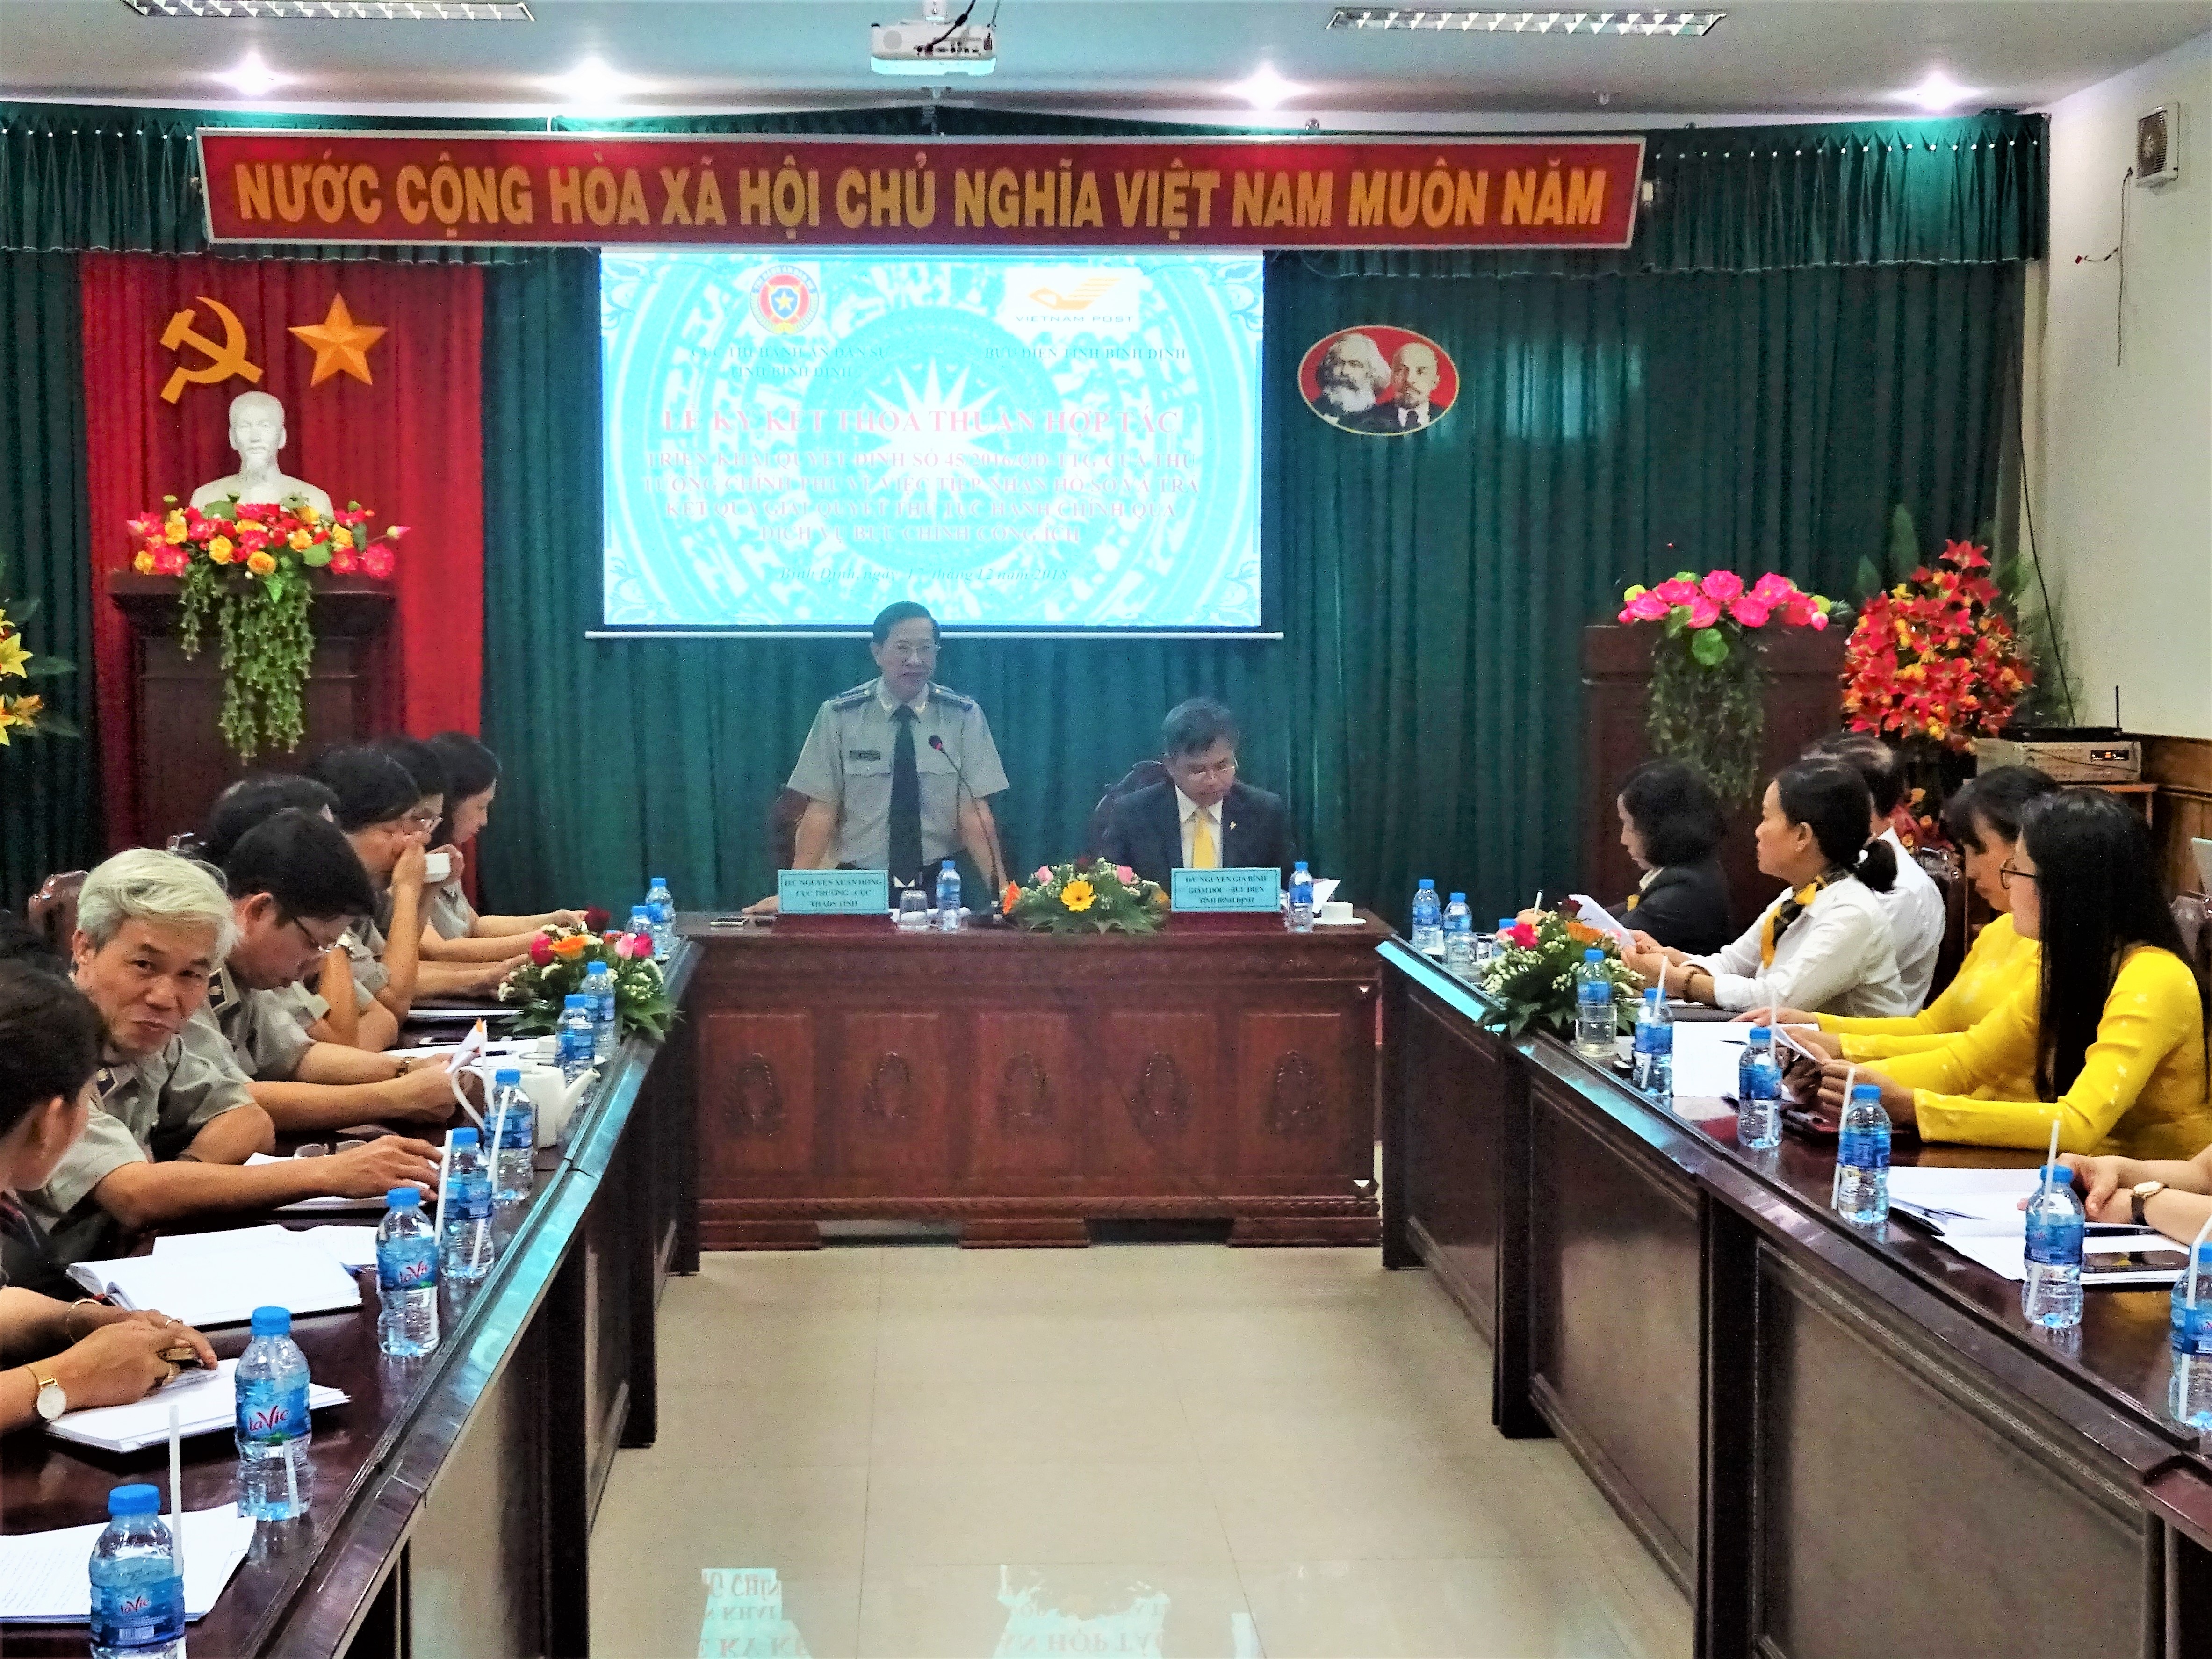 Cục Thi hành án dân sự - Bưu điện tỉnh Bình Định: Ký kết thỏa thuận hợp tác cung cấp dịch vụ tiếp nhận hồ sơ và trả kết quả giải quyết thủ tục hành chính qua dịch vụ bưu chính công ích